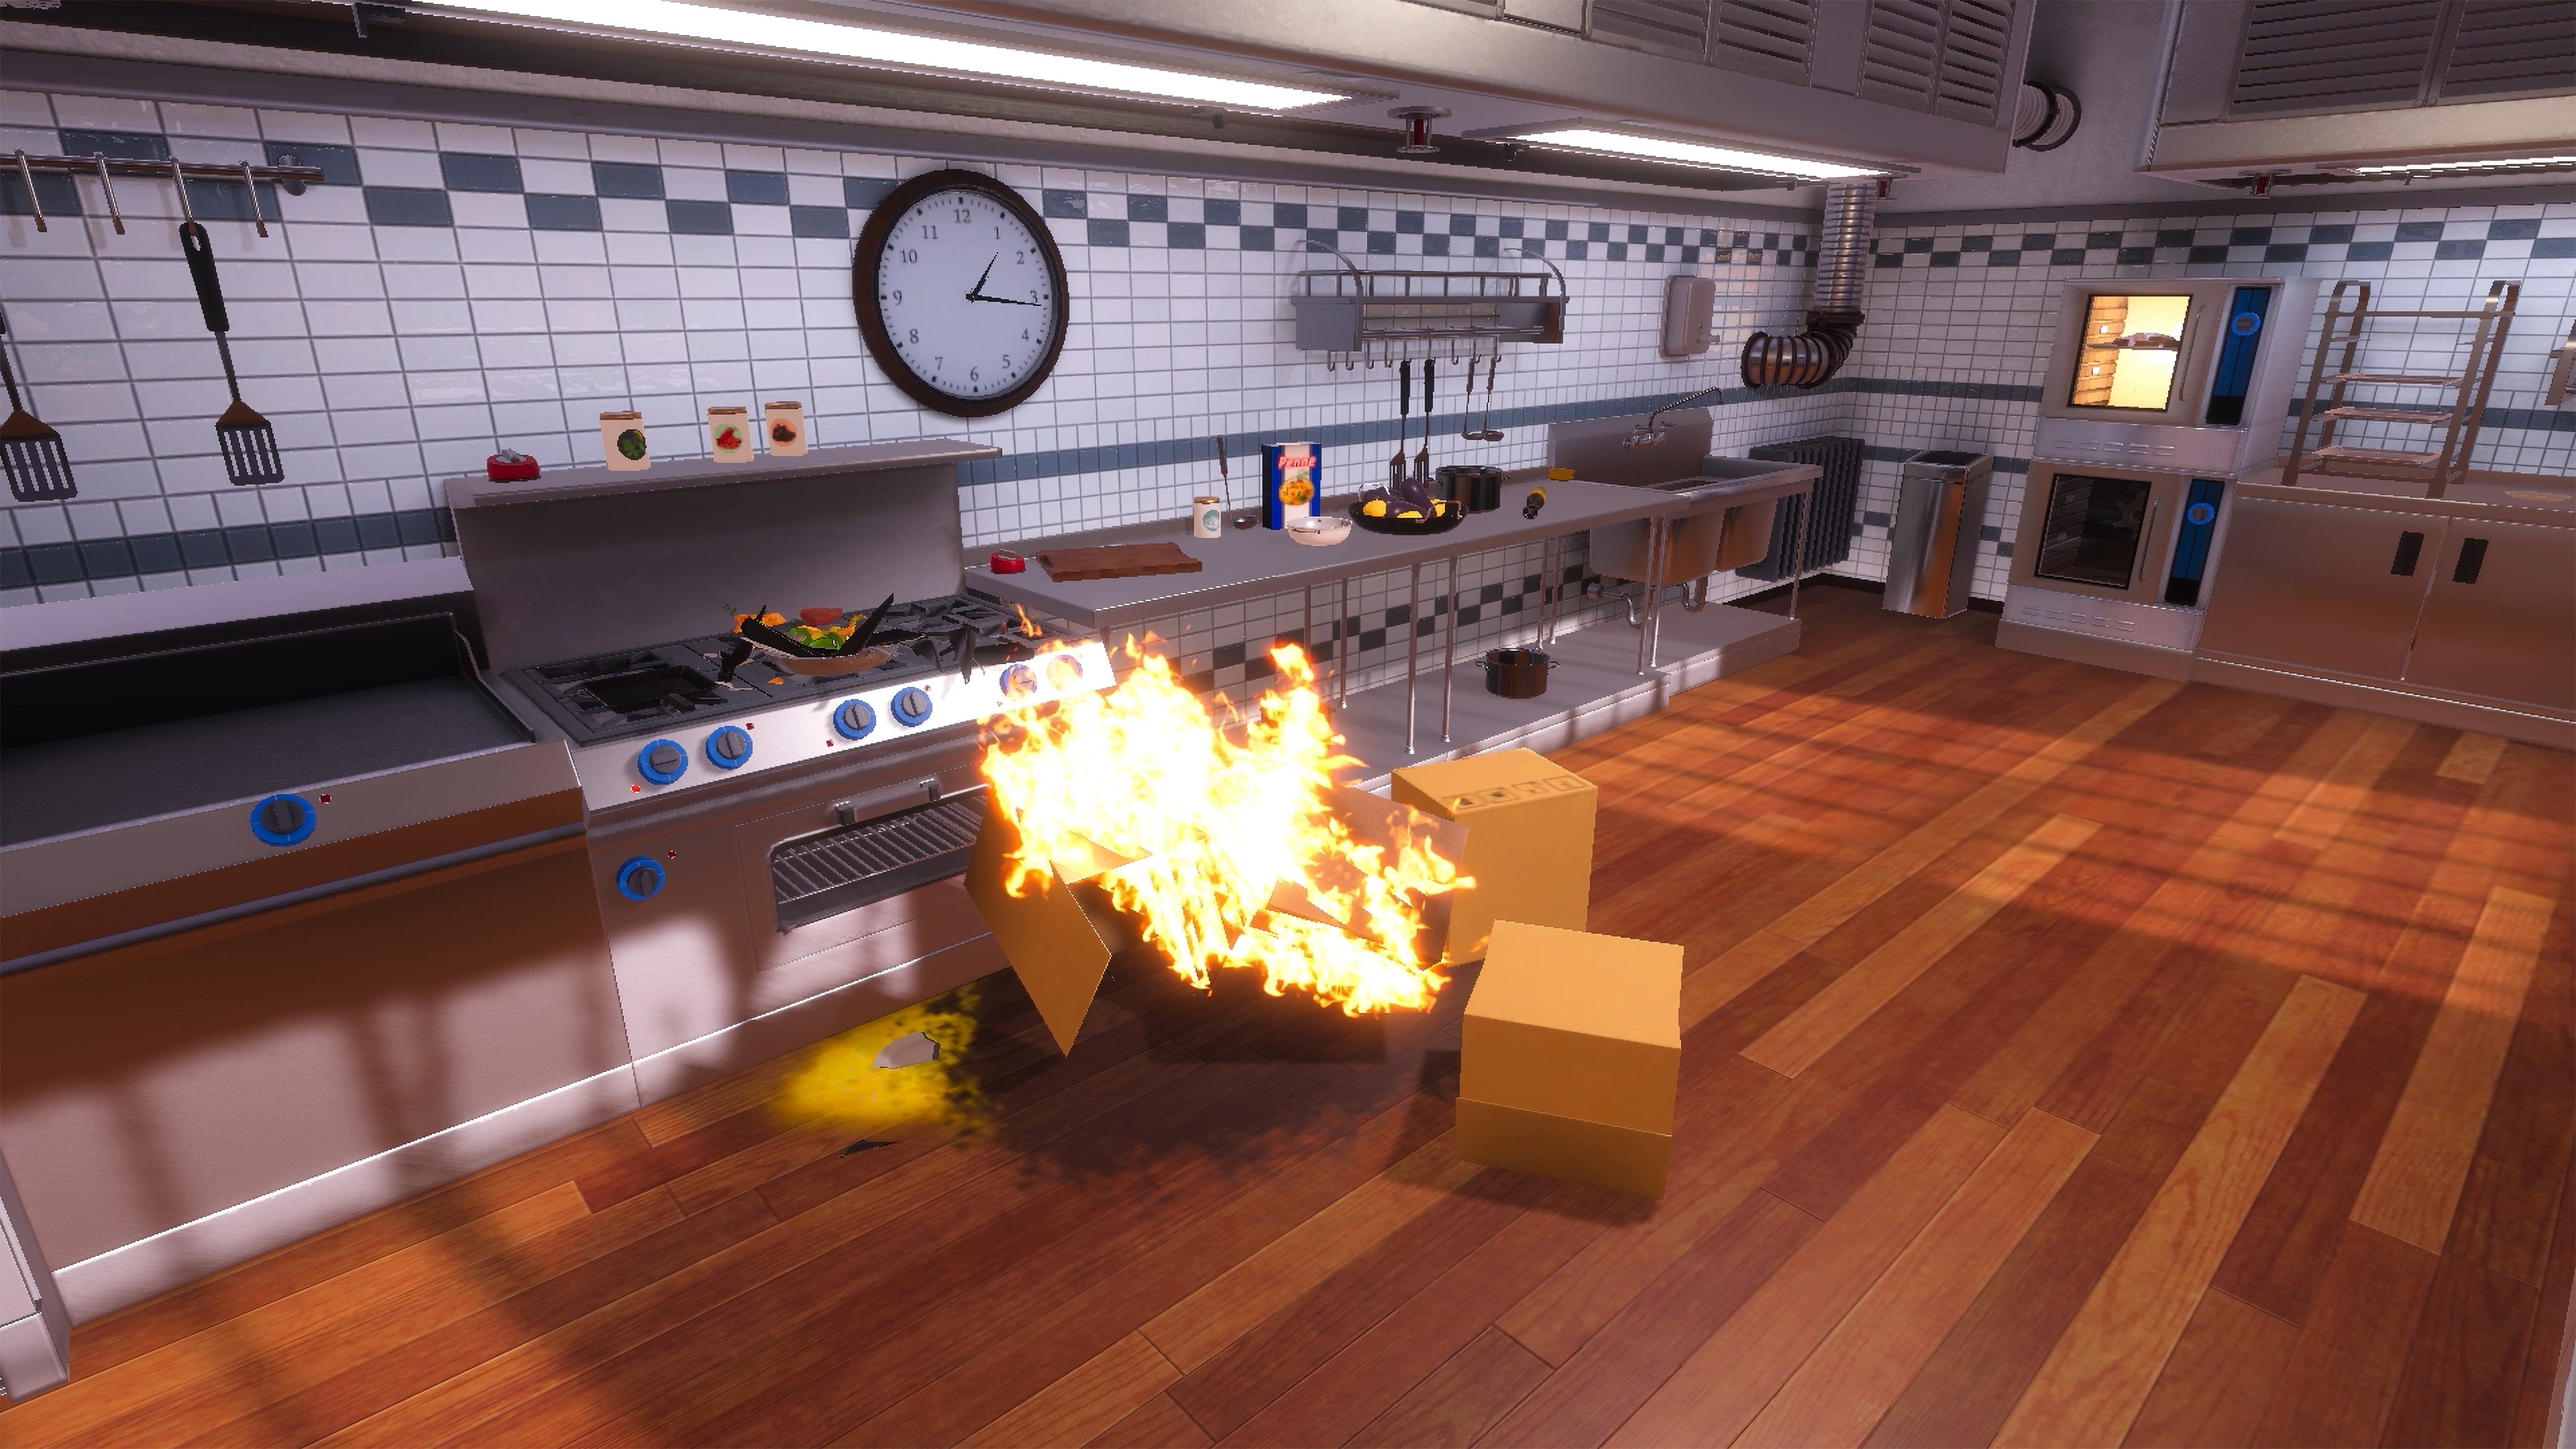 Comprar Cooking Simulator PS4 Comparar Preços